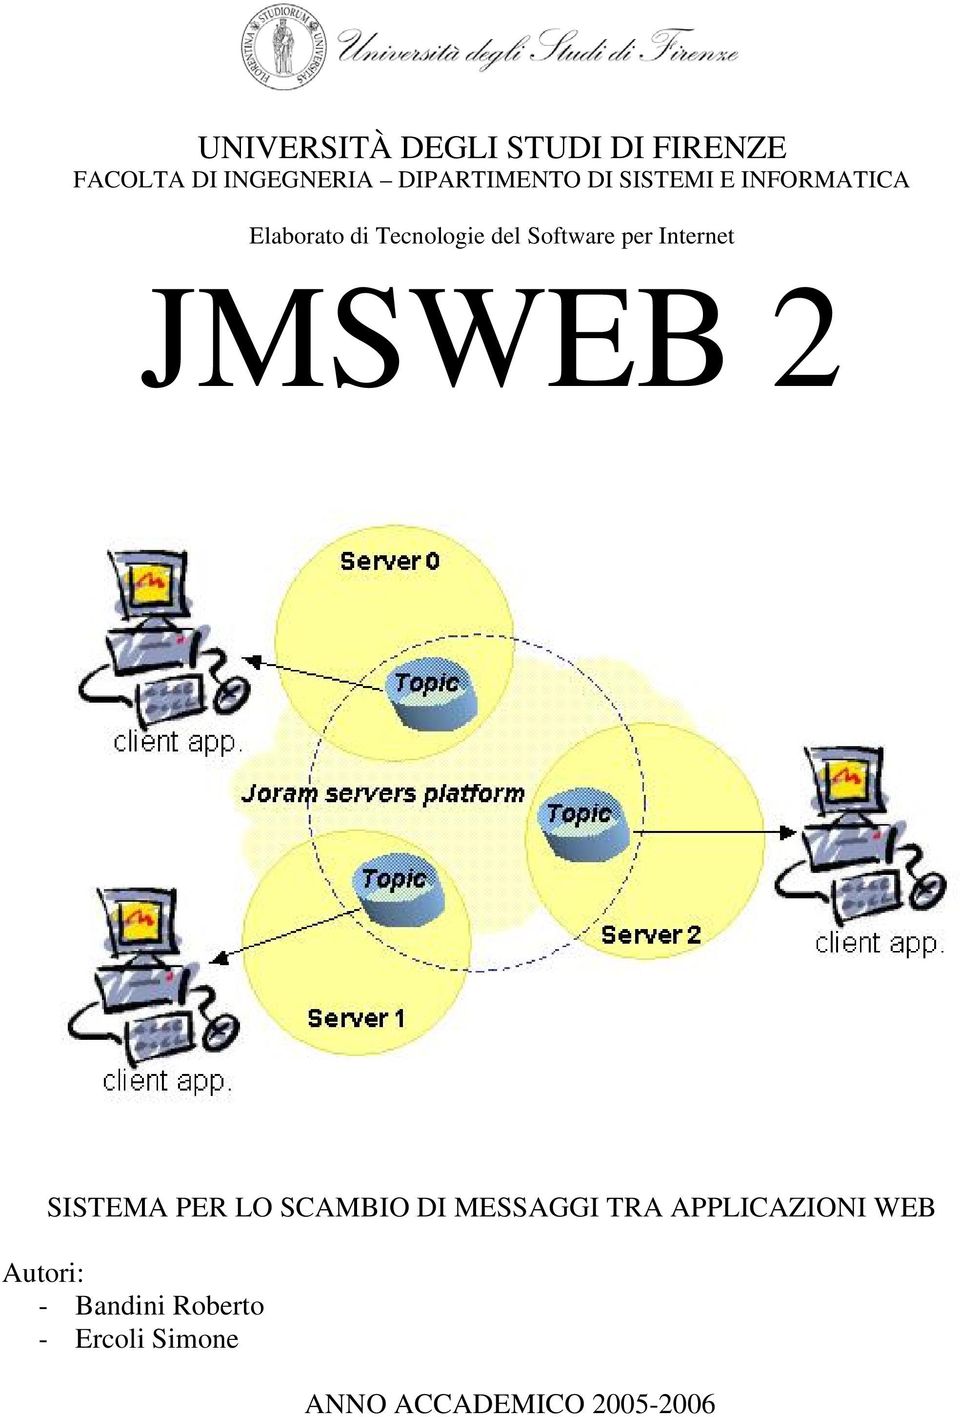 Internet JMSWEB 2 SISTEMA PER LO SCAMBIO DI MESSAGGI TRA